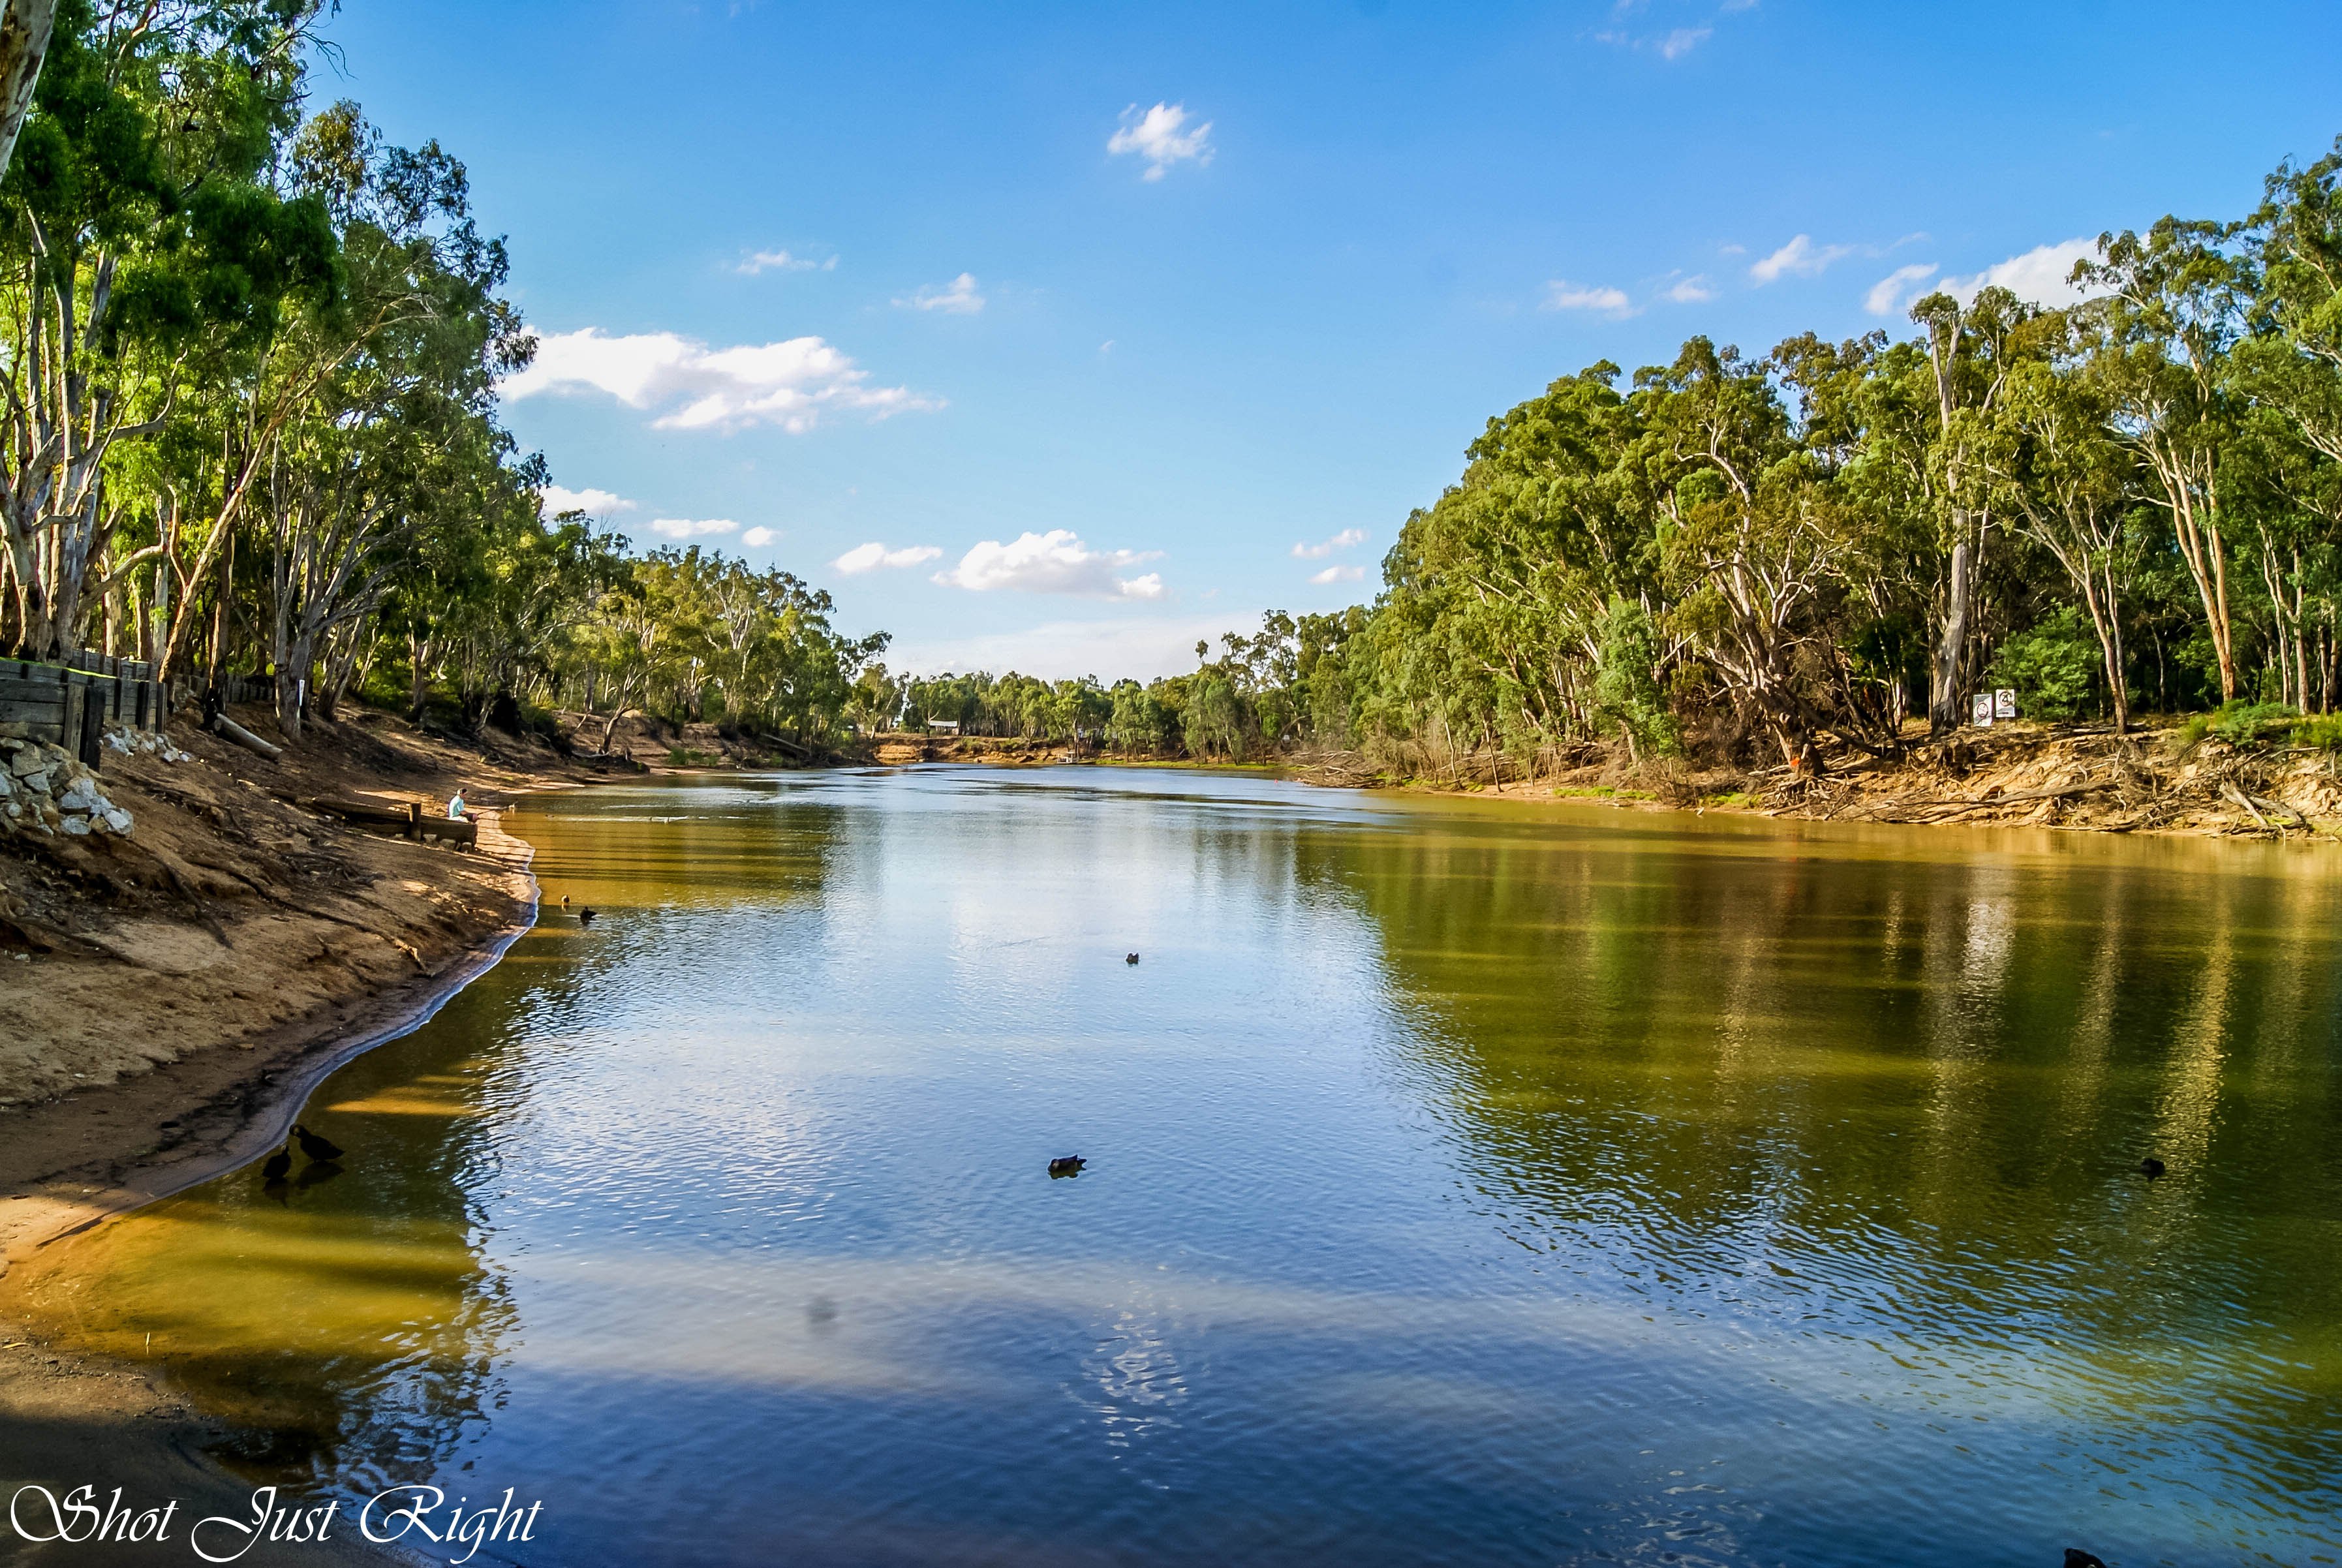 Река дарлинг полноводна. Река Муррей в Австралии. Муррей и Дарлинг. Река Дарлинг в Австралии. Реки Дарлинг и Муррей.